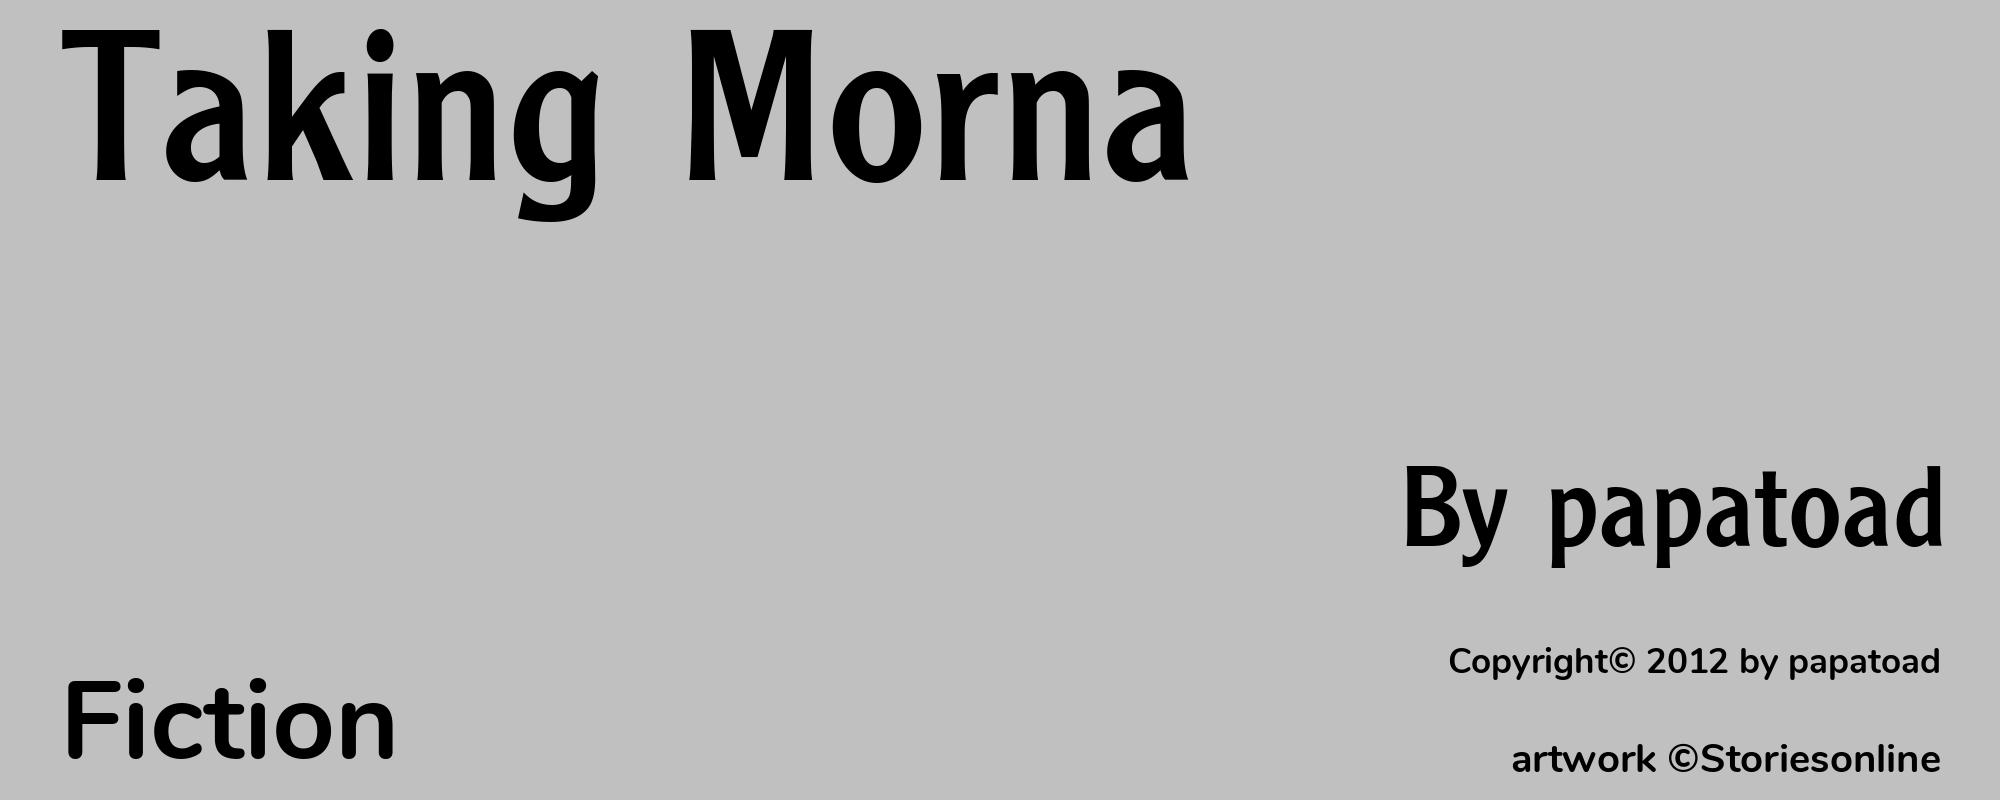 Taking Morna - Cover